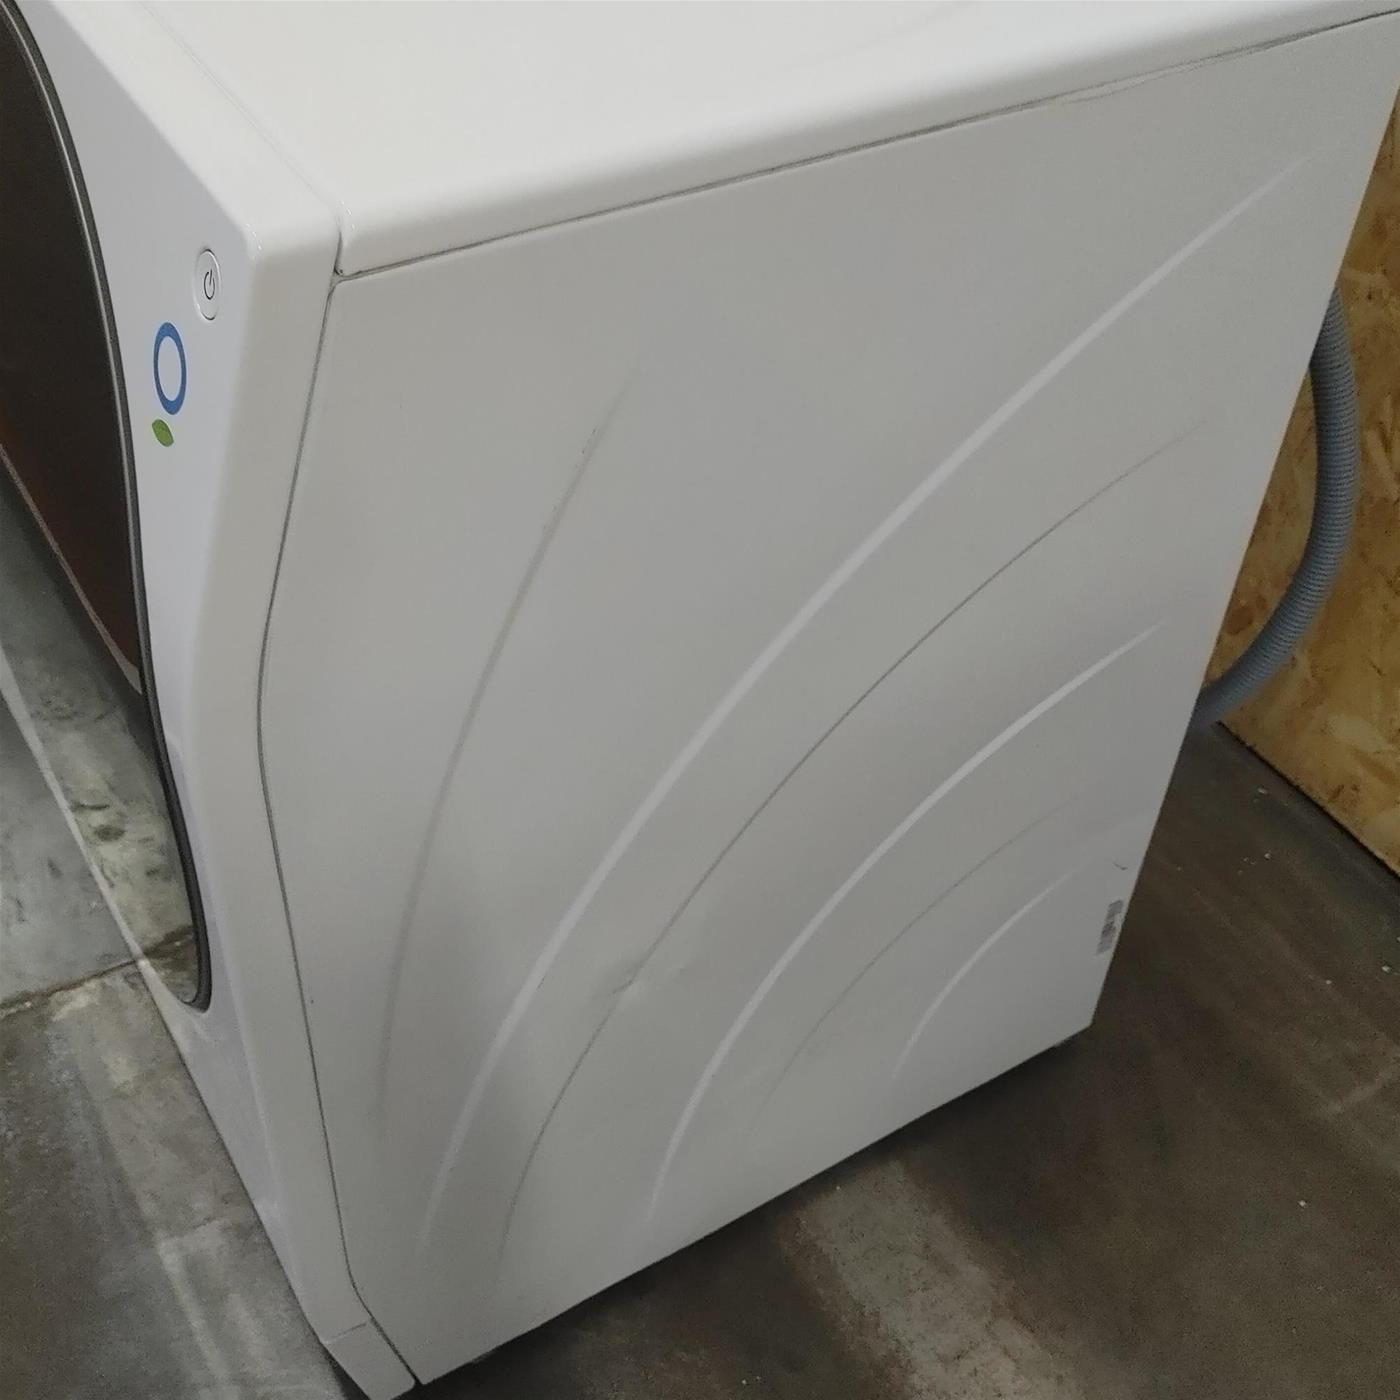 LG LSWD100E lavasciuga Libera installazione Caricamento frontale Bianco A